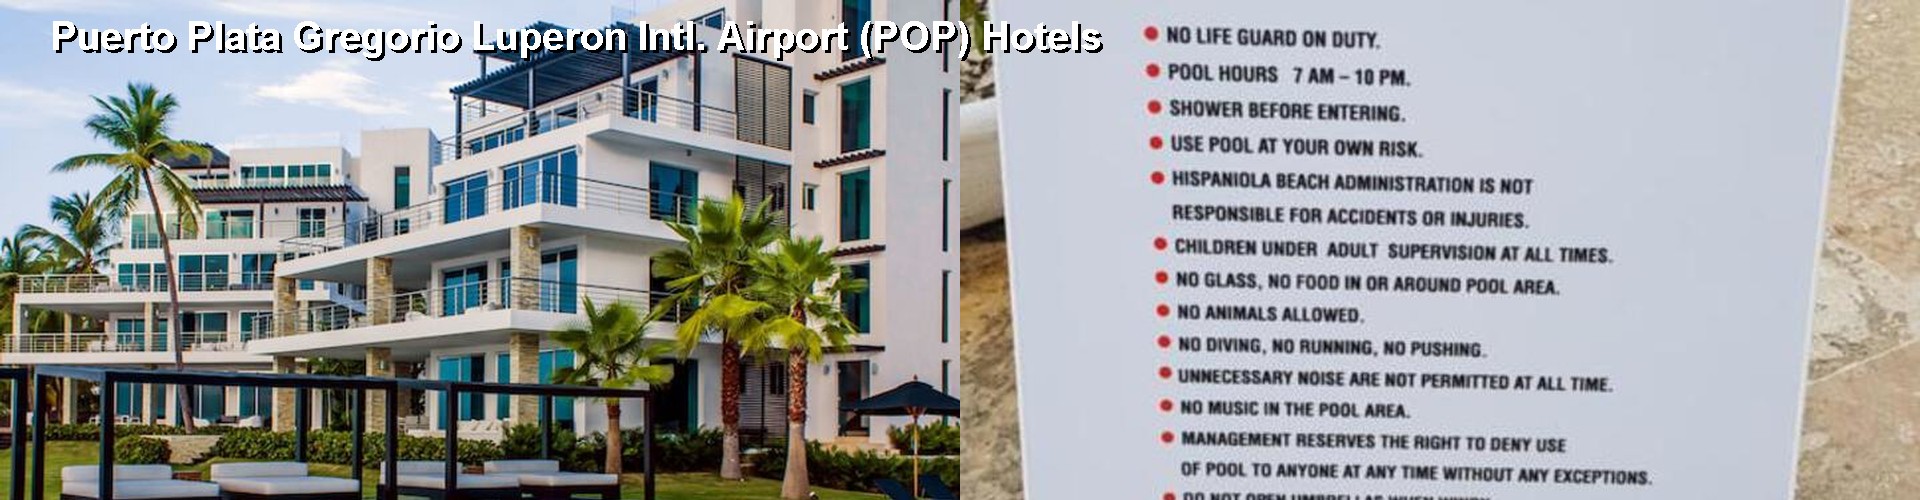 5 Best Hotels near Puerto Plata Gregorio Luperon Intl. Airport (POP)